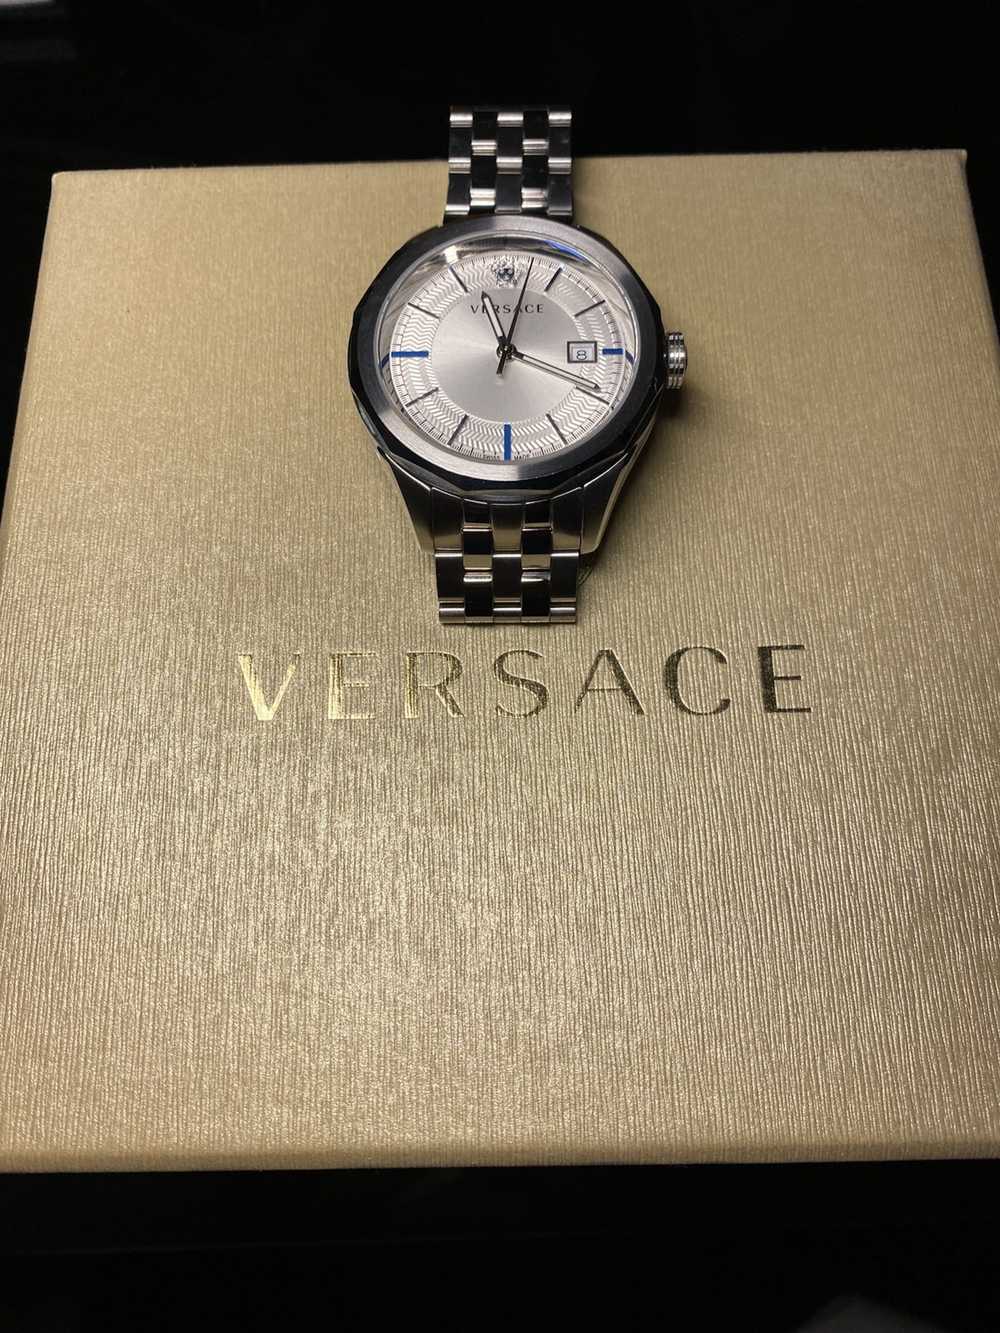 Versace Versace Watch w/ OG packaging - image 1